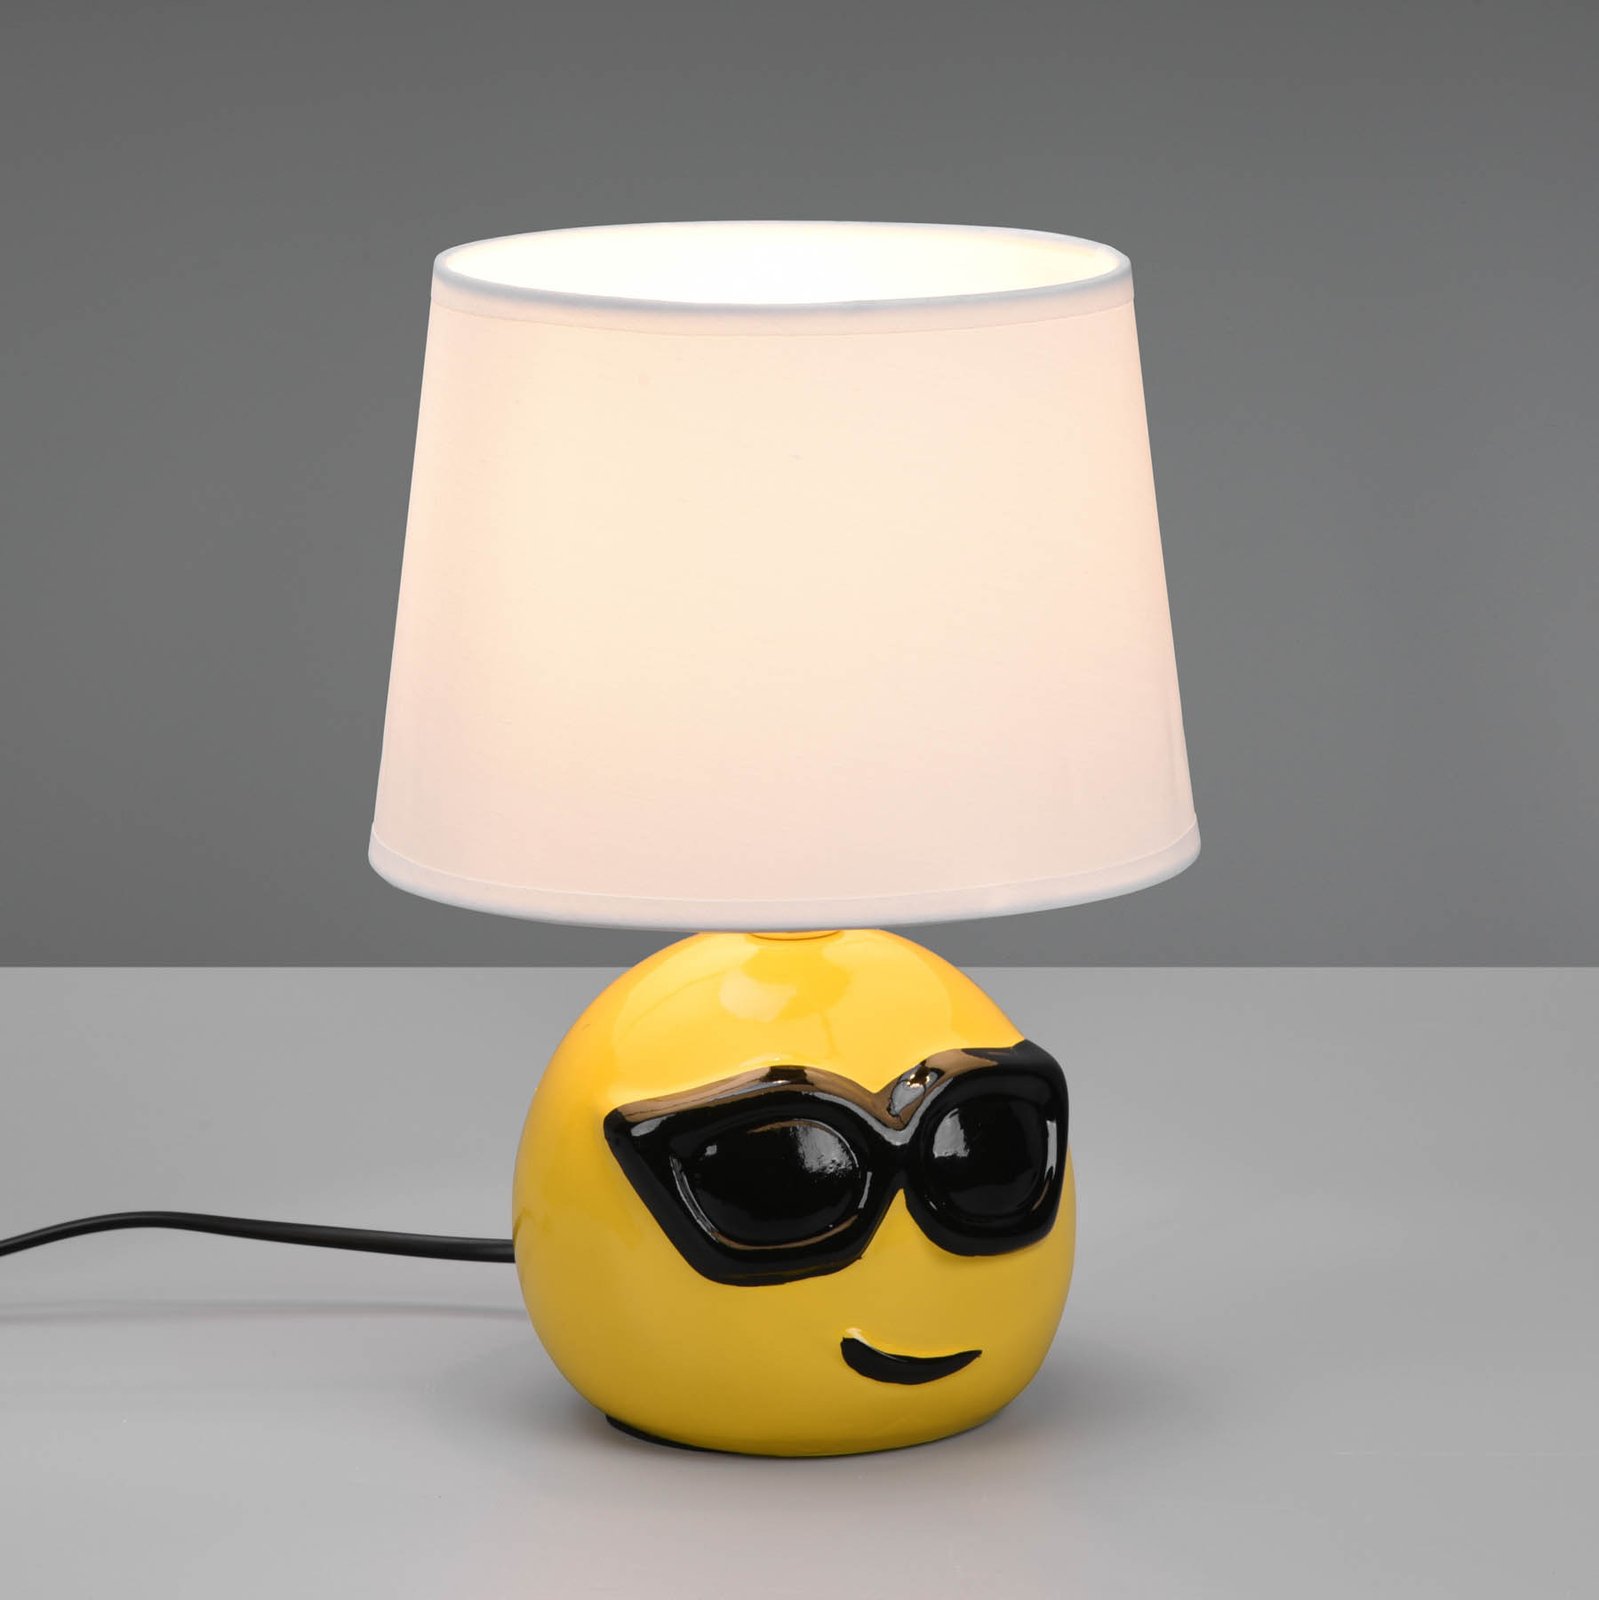 Coolio bordlampe med smiley, hvid stofskærm